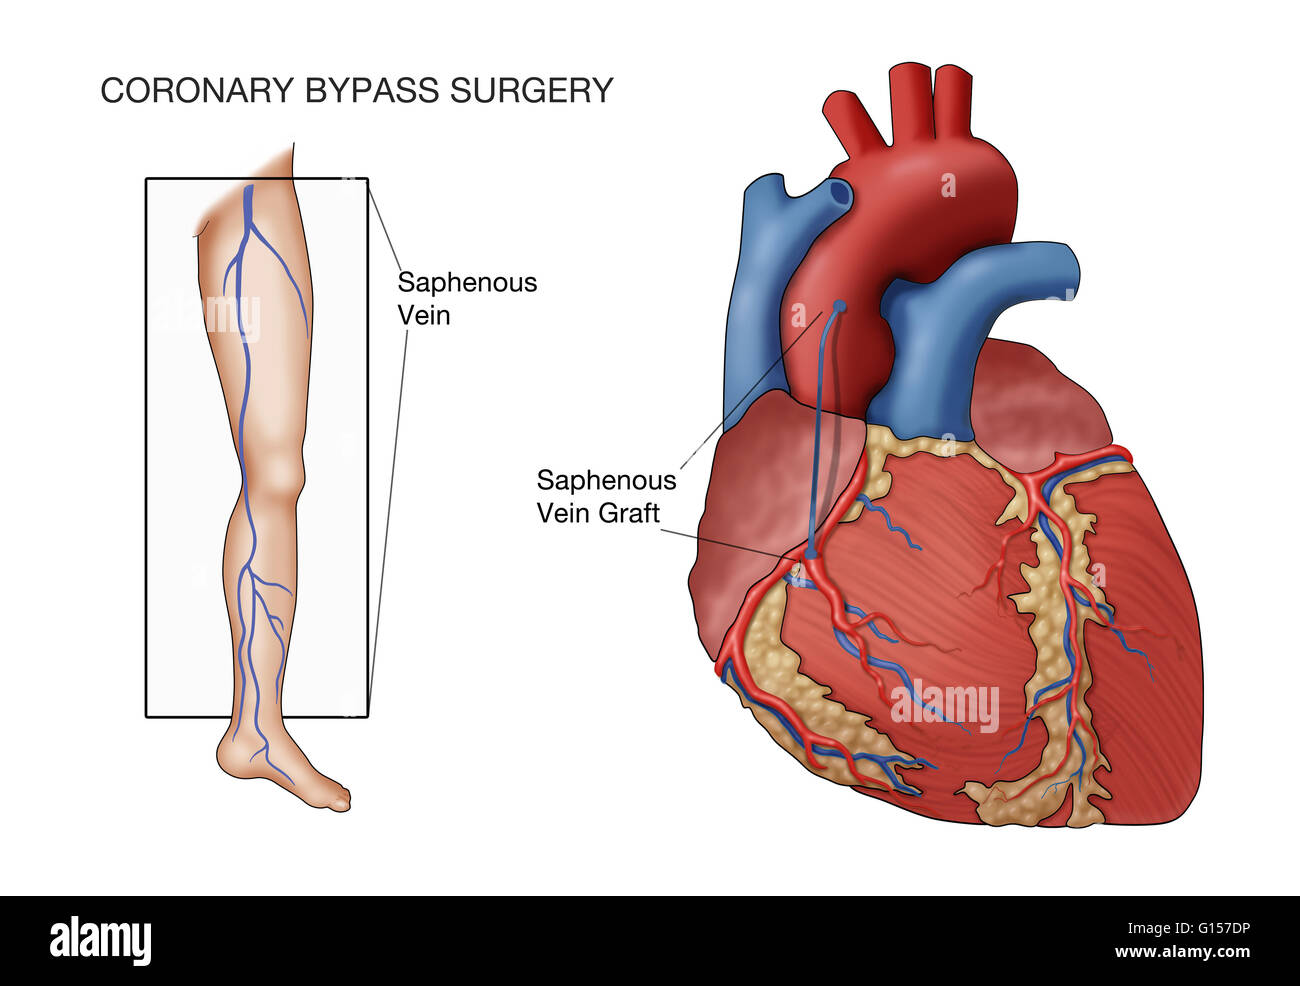 La chirurgia dei bypass coronarici, denominata illustrazione. Una nave dal paziente la vena grande safena (in gamba) è innestato tra l'aorta e la coronaria ostruito, a valle dell'ostruzione, in modo da ripristinare il sangue di irrigazione del cuore. Foto Stock